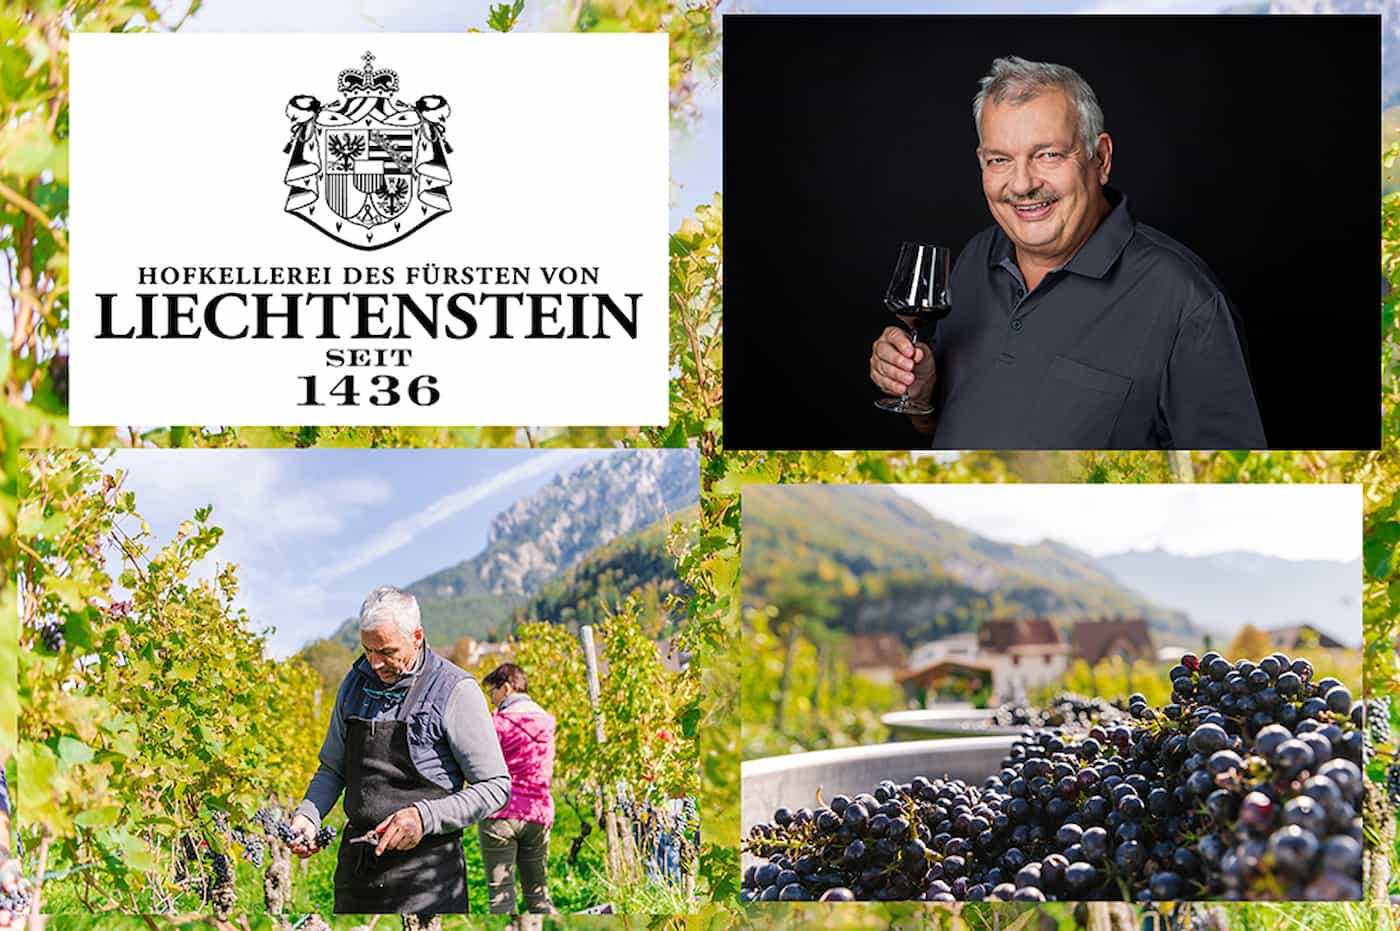 Höchste Bewertung für Wein aus Liechtenstein